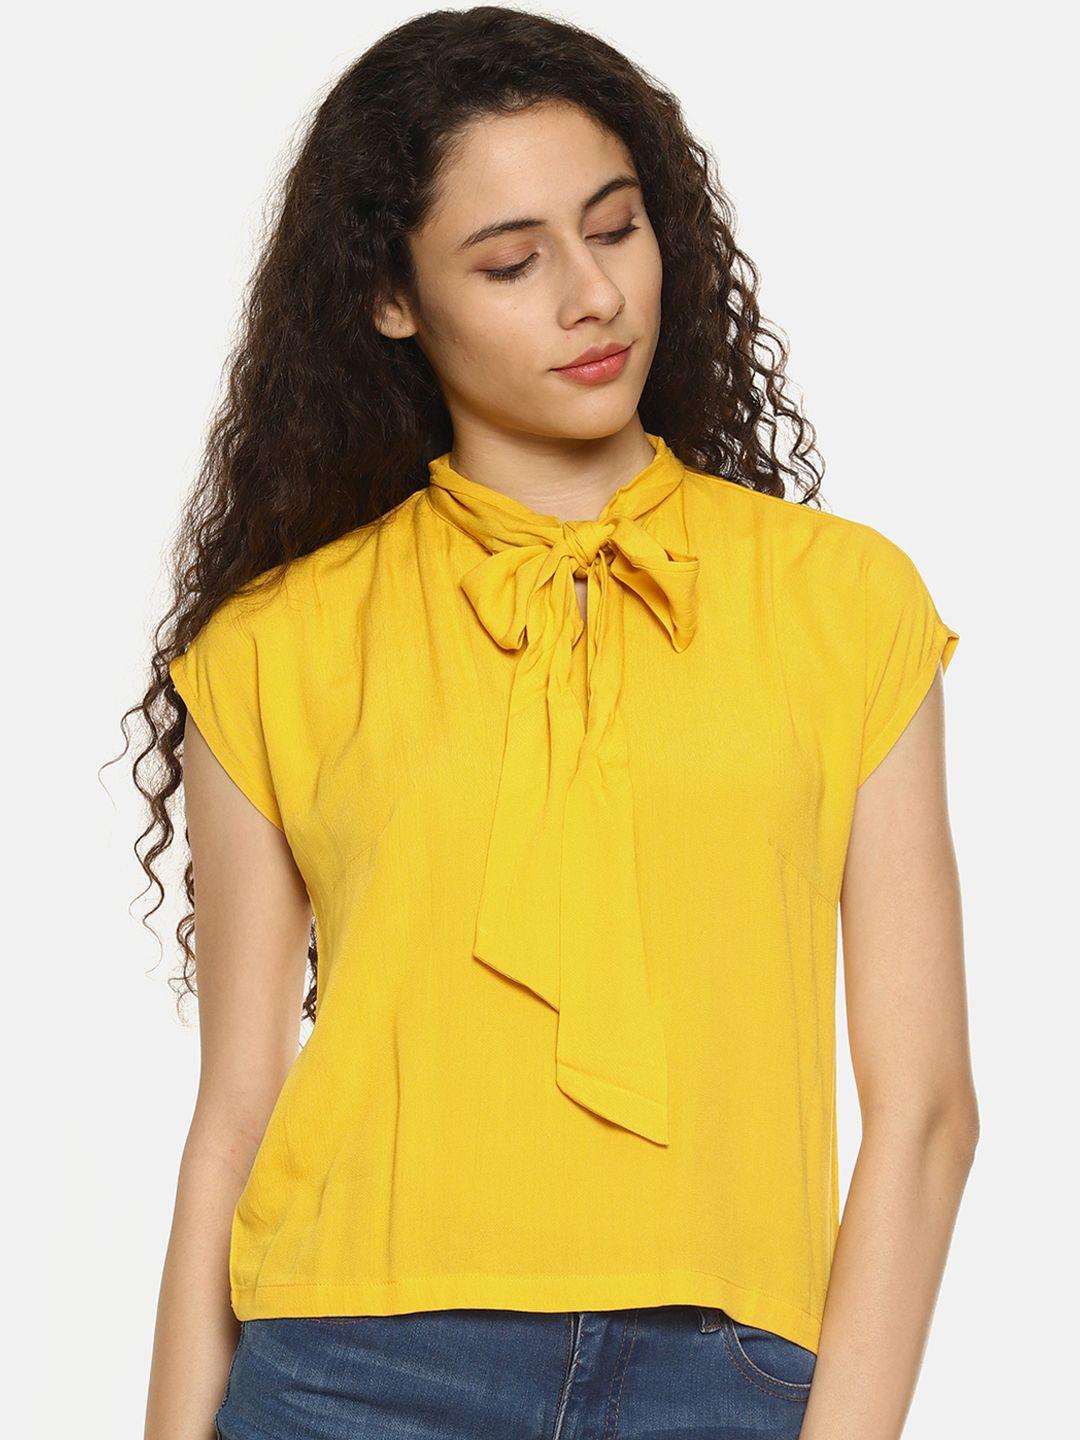 aara women yellow solid top